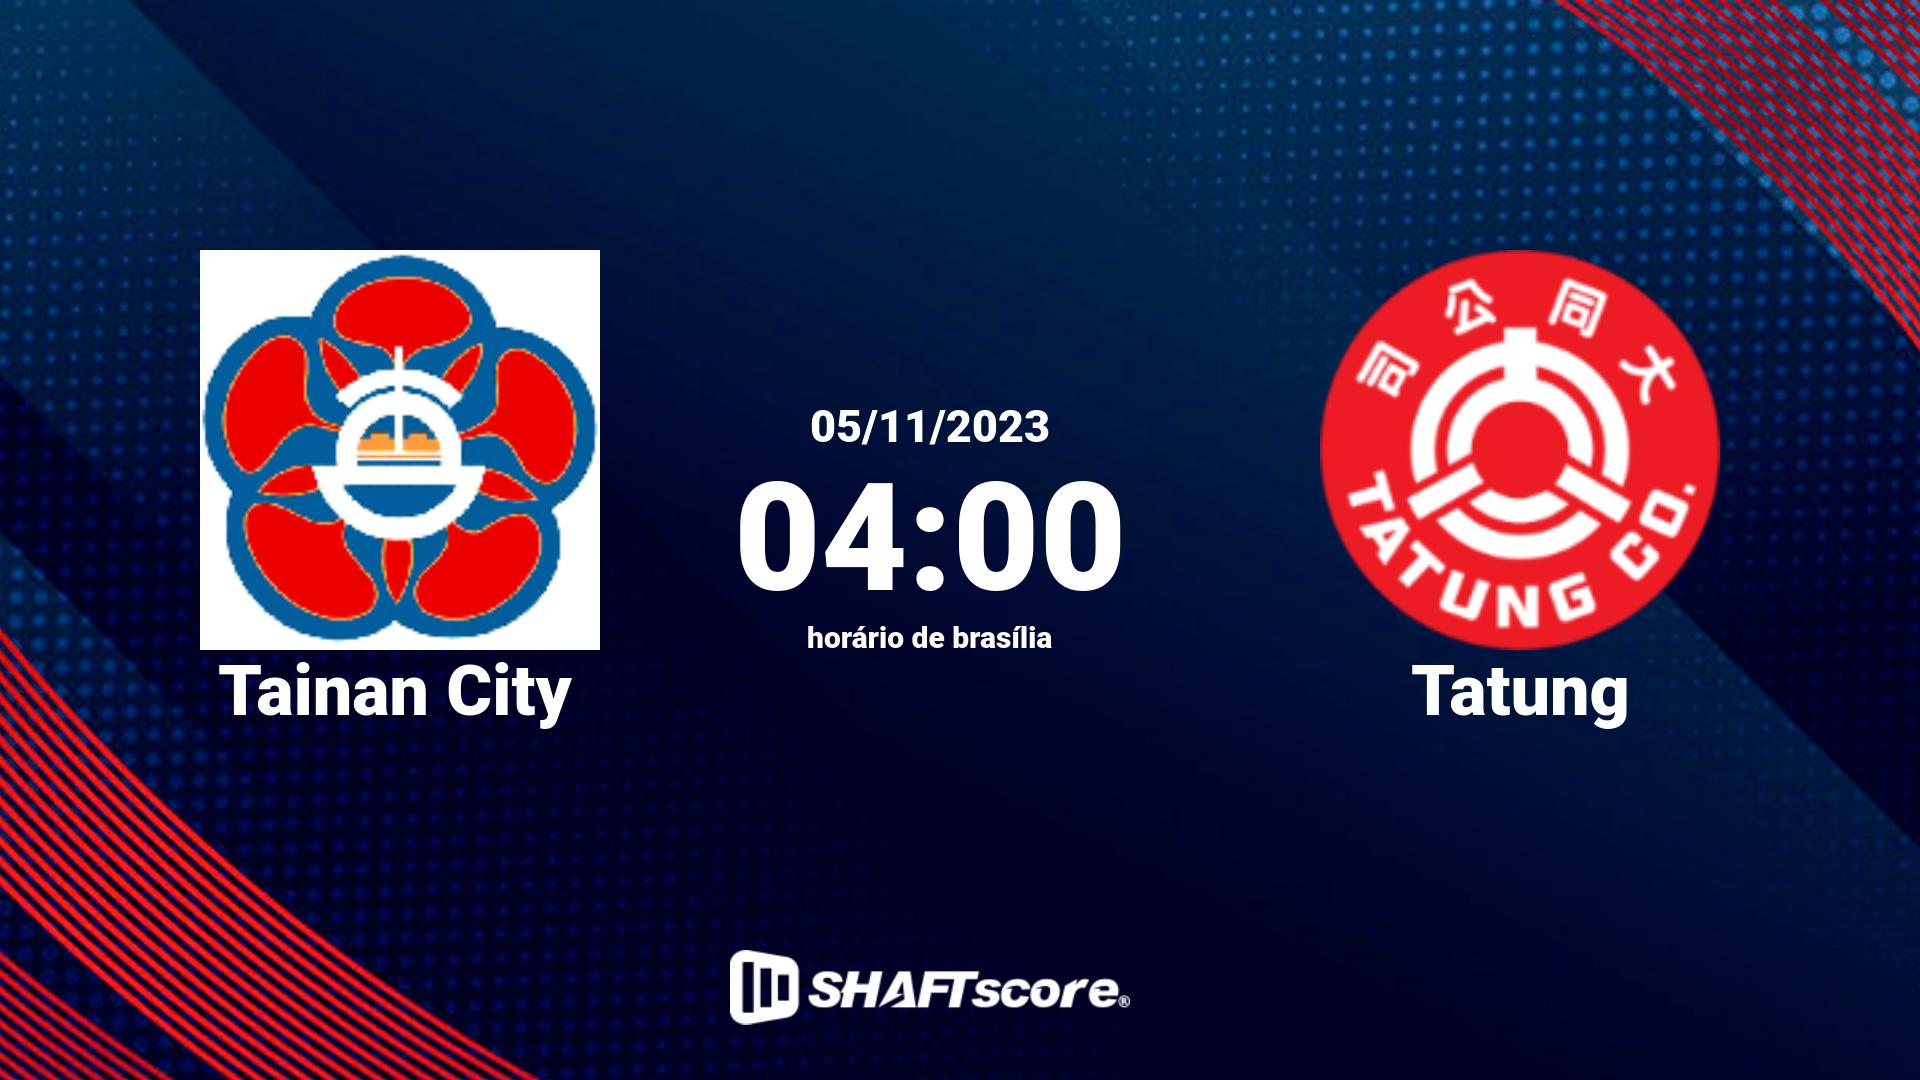 Estatísticas do jogo Tainan City vs Tatung 05.11 04:00